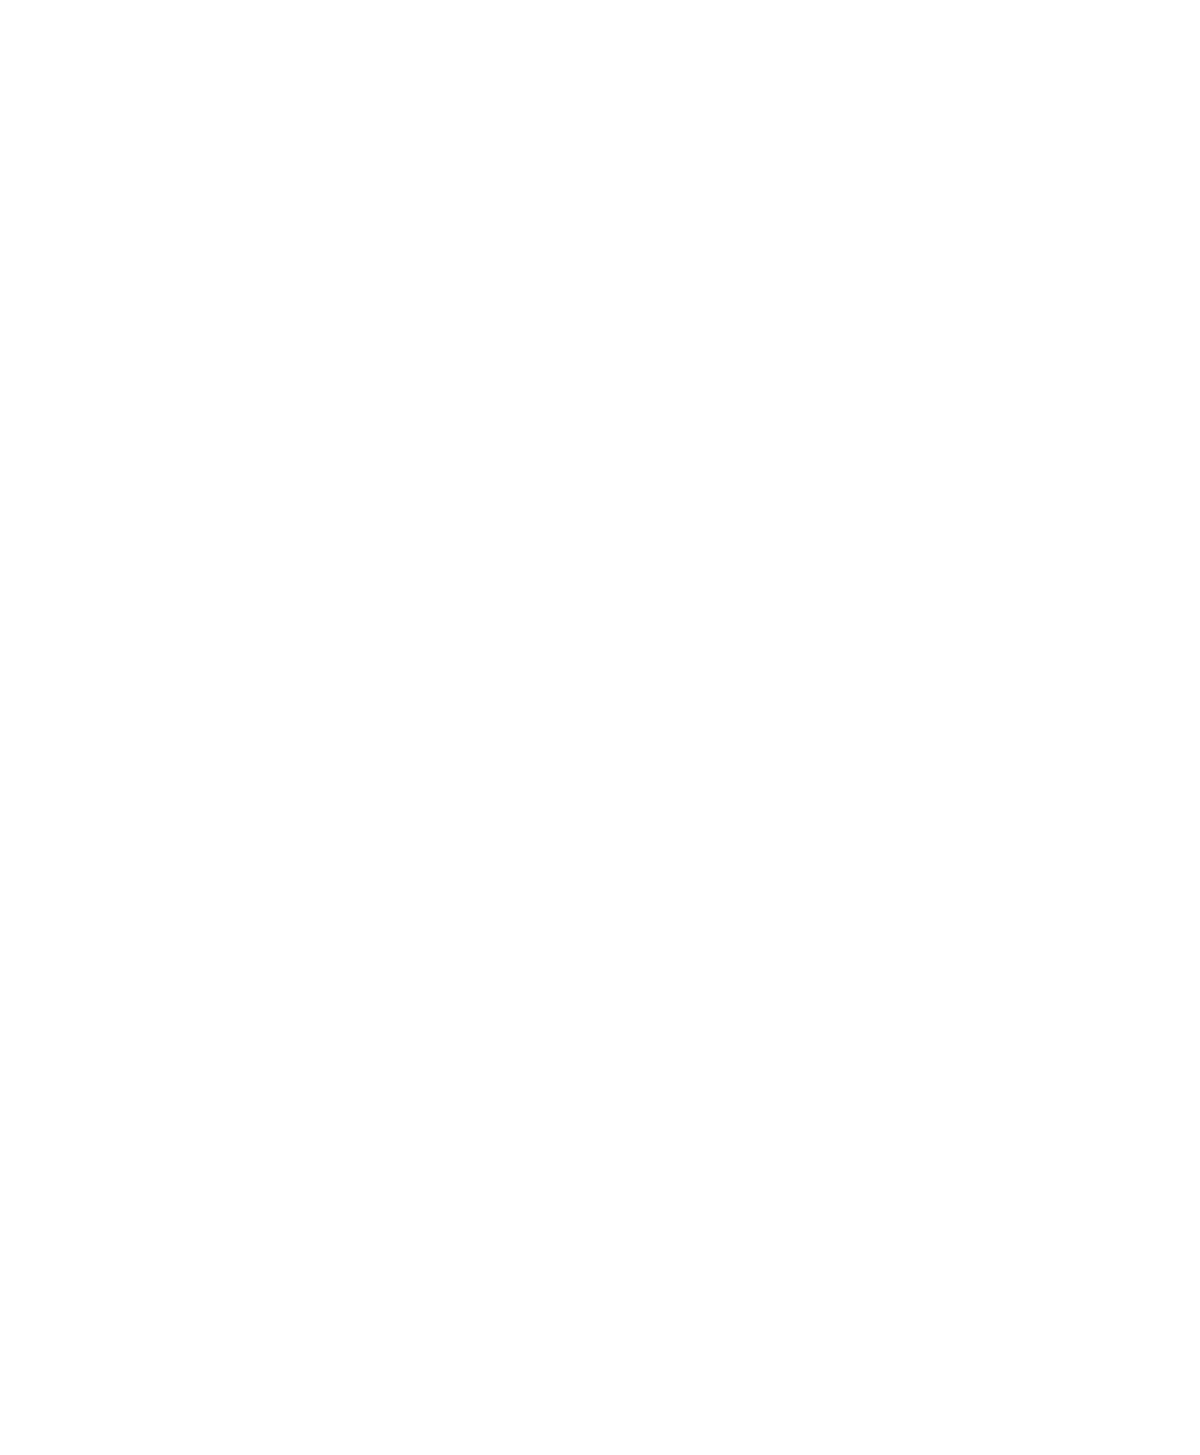 AspIT-Midtjylland